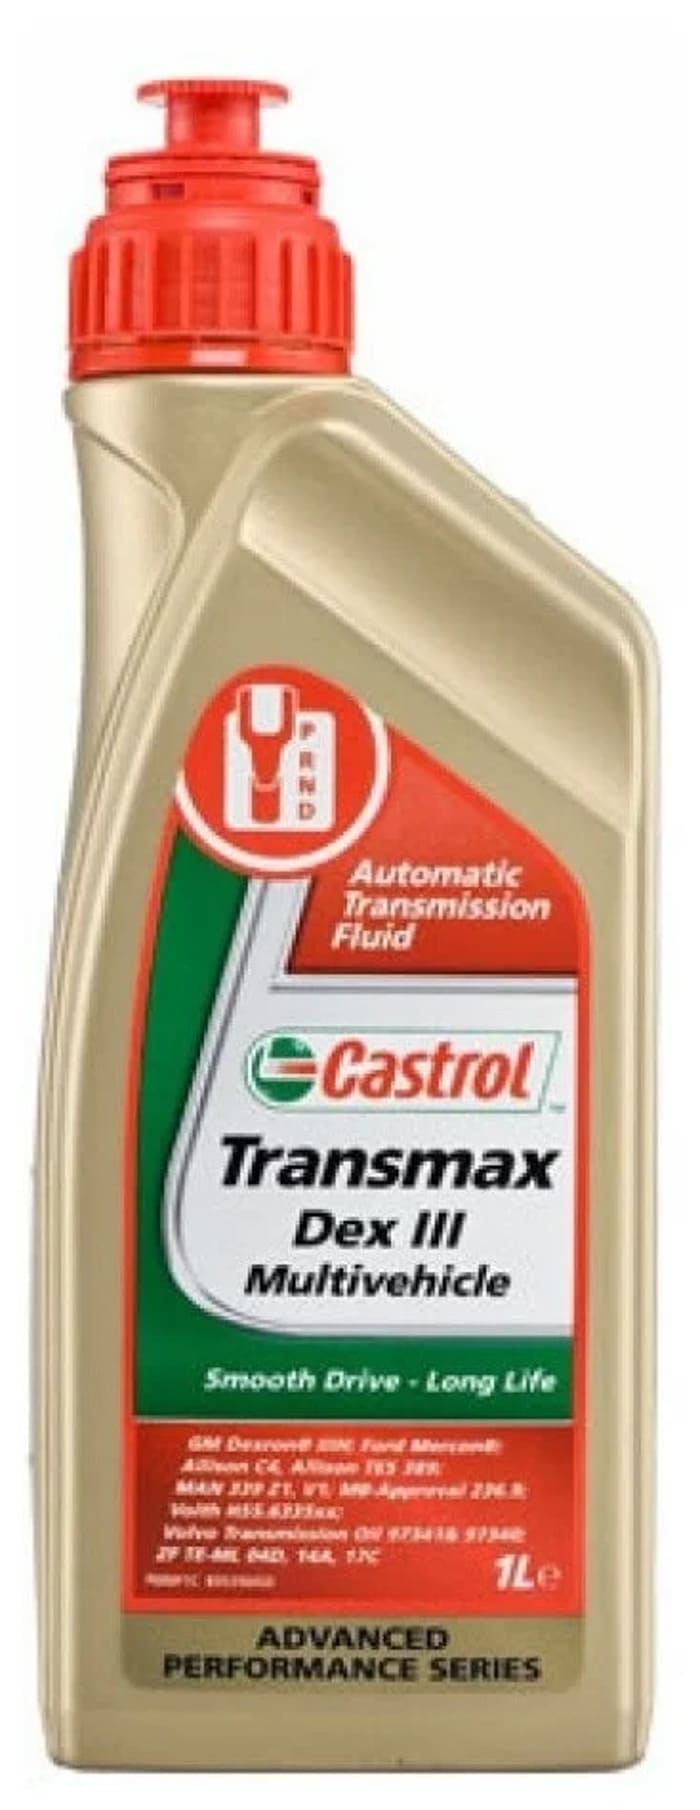 Castrol transmax atf. Castrol Transmax ATF Dex/Merc Multivehicle 1л. Castrol Transmax Dex III Multivehicle ATF. 15dd2c масло трансмиссионное Castrol Transmax ATF Dex/Merc Multivehicle 1 л 15dd2c. Масло трансмиссионное Castrol Dex 2.